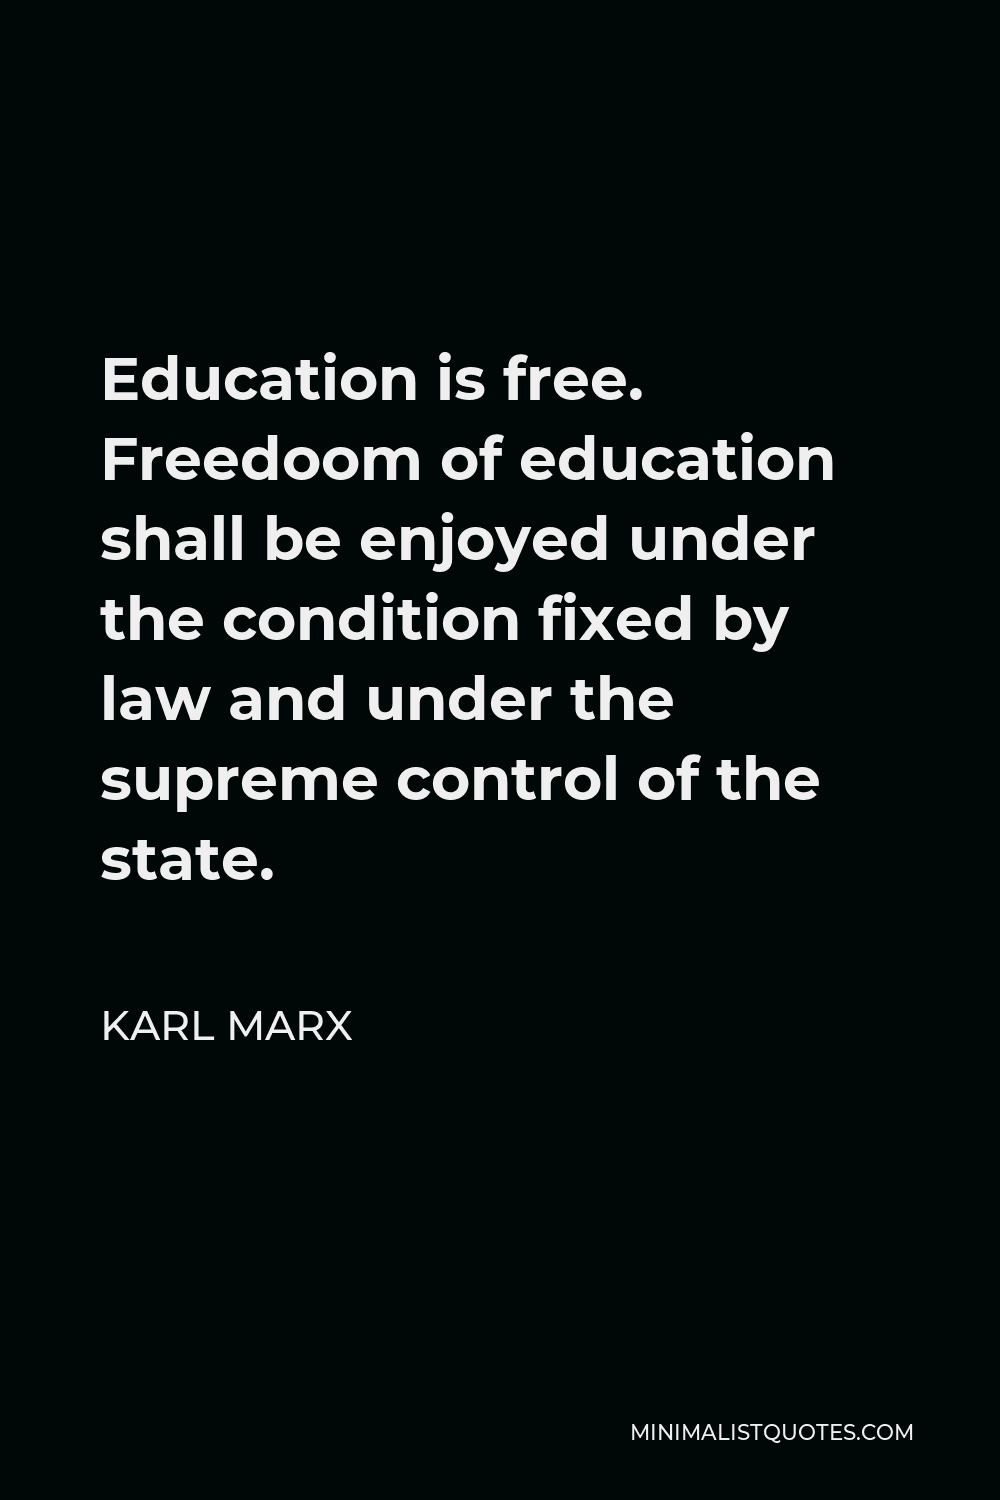 marx education theory